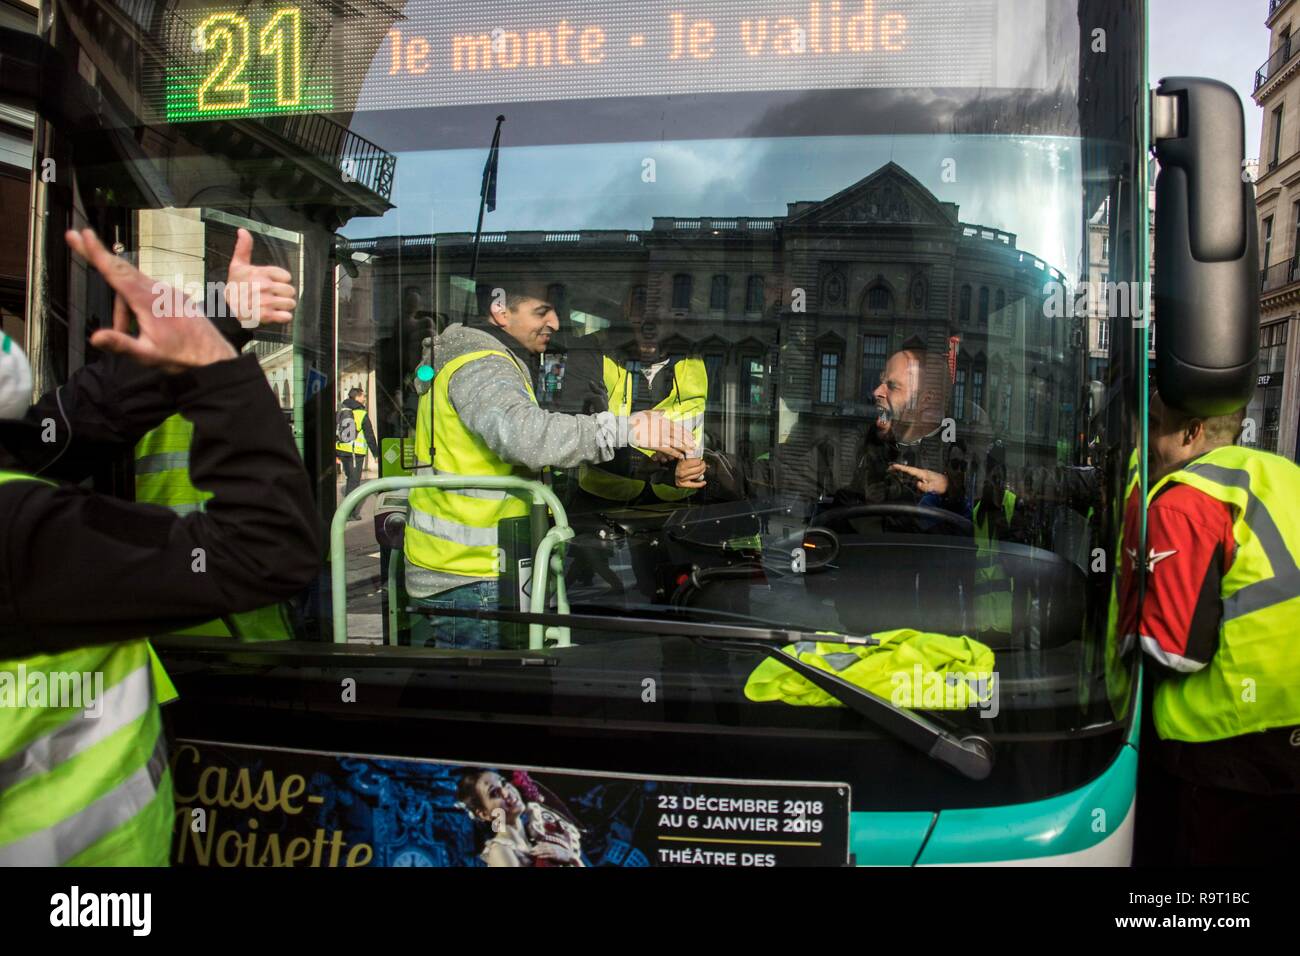 Chauffeur de bus vu serrer la main de jaune les protestataires à montrer  son soutien au mouvement pendant la manifestation. Gilet jaune les  manifestants ont parcouru les rues de Paris un autre